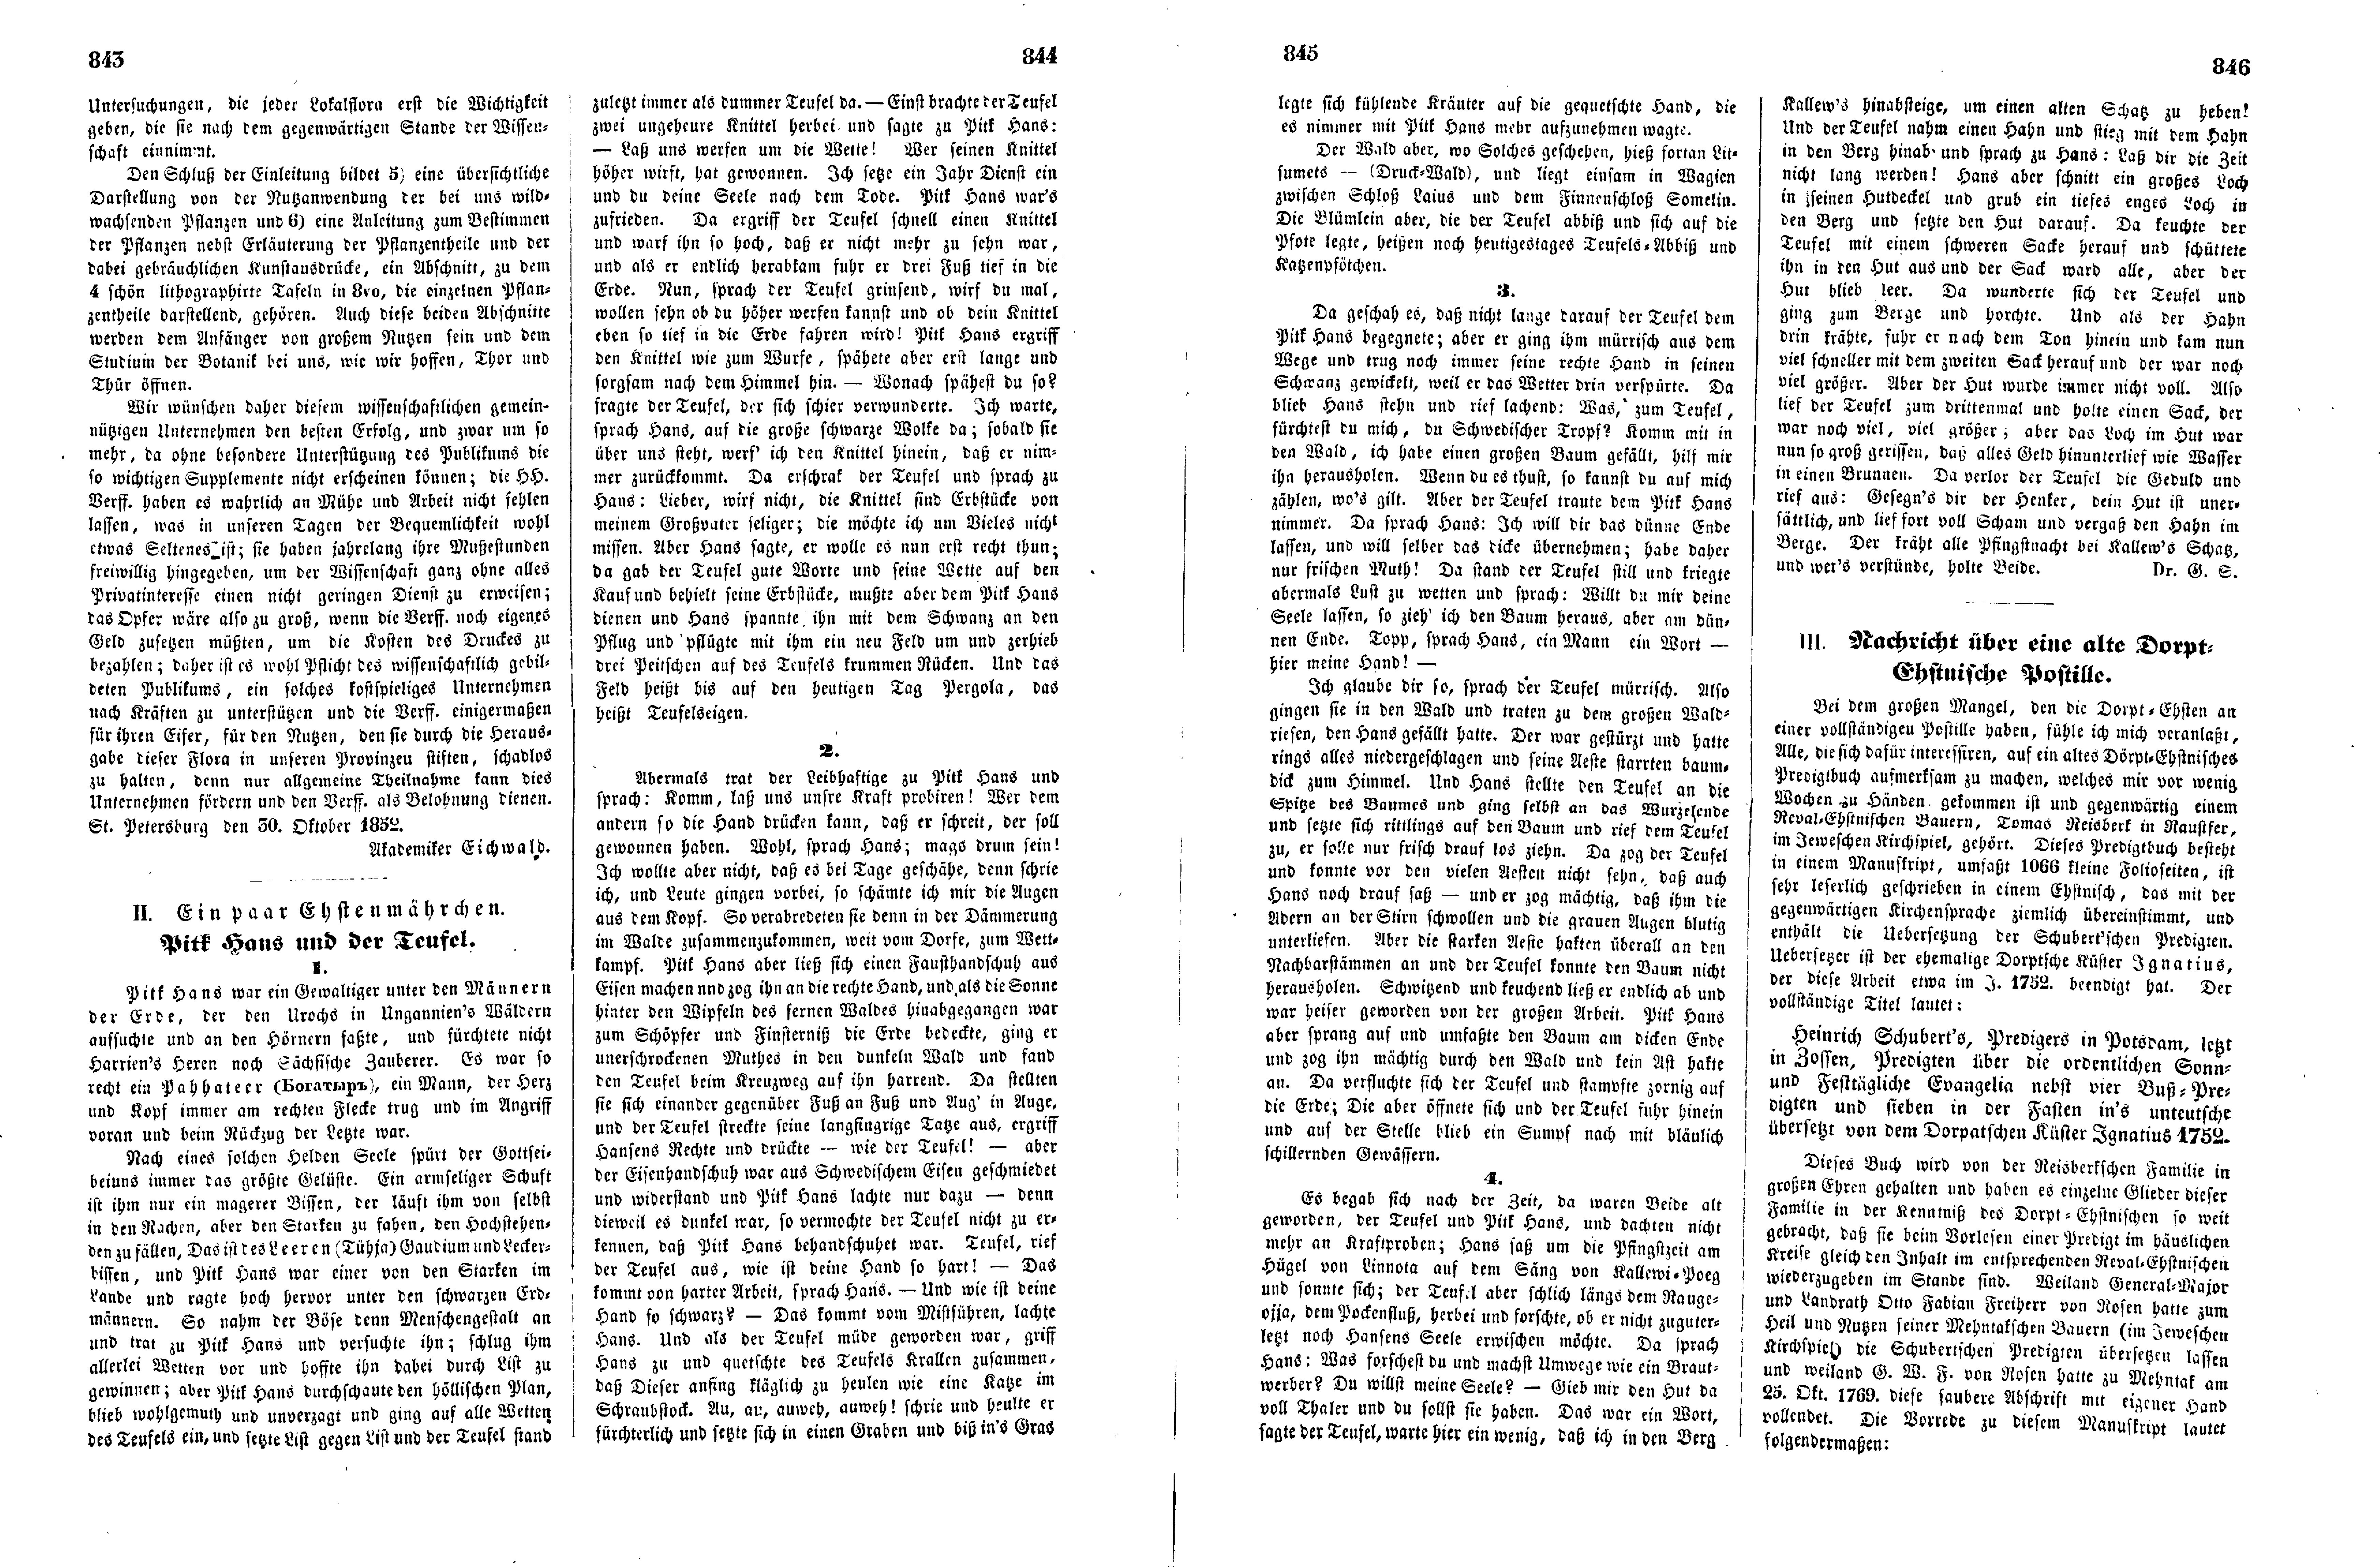 Das Inland [17] (1852) | 216. (843-846) Haupttext